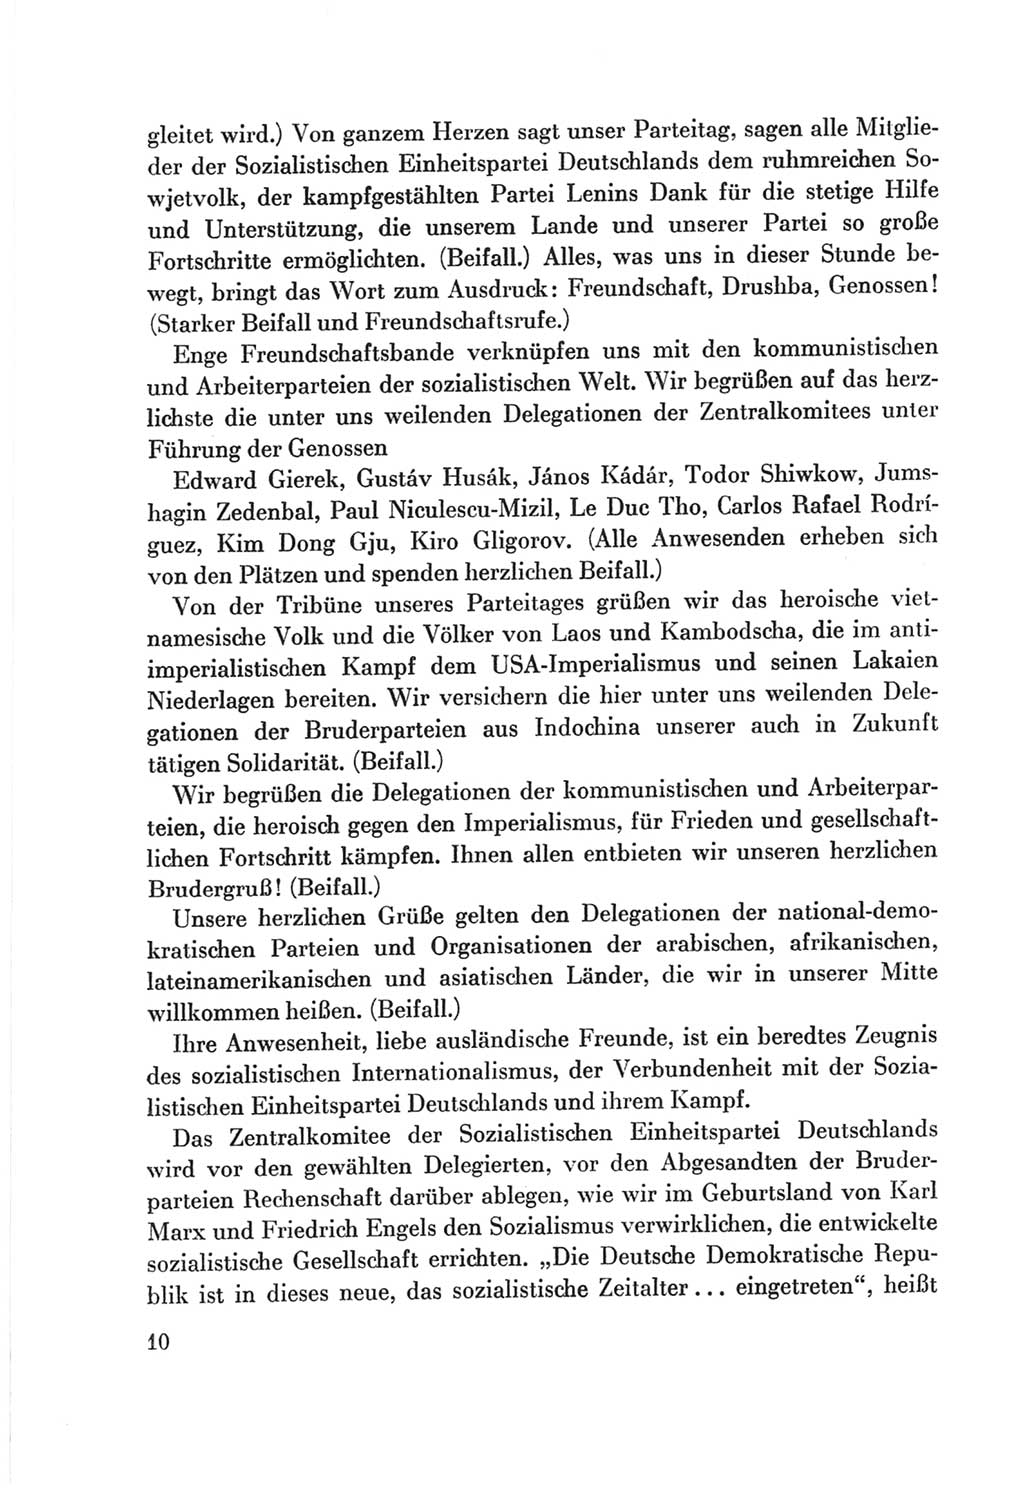 Protokoll der Verhandlungen des Ⅷ. Parteitages der Sozialistischen Einheitspartei Deutschlands (SED) [Deutsche Demokratische Republik (DDR)] 1971, Band 1, Seite 10 (Prot. Verh. Ⅷ. PT SED DDR 1971, Bd. 1, S. 10)